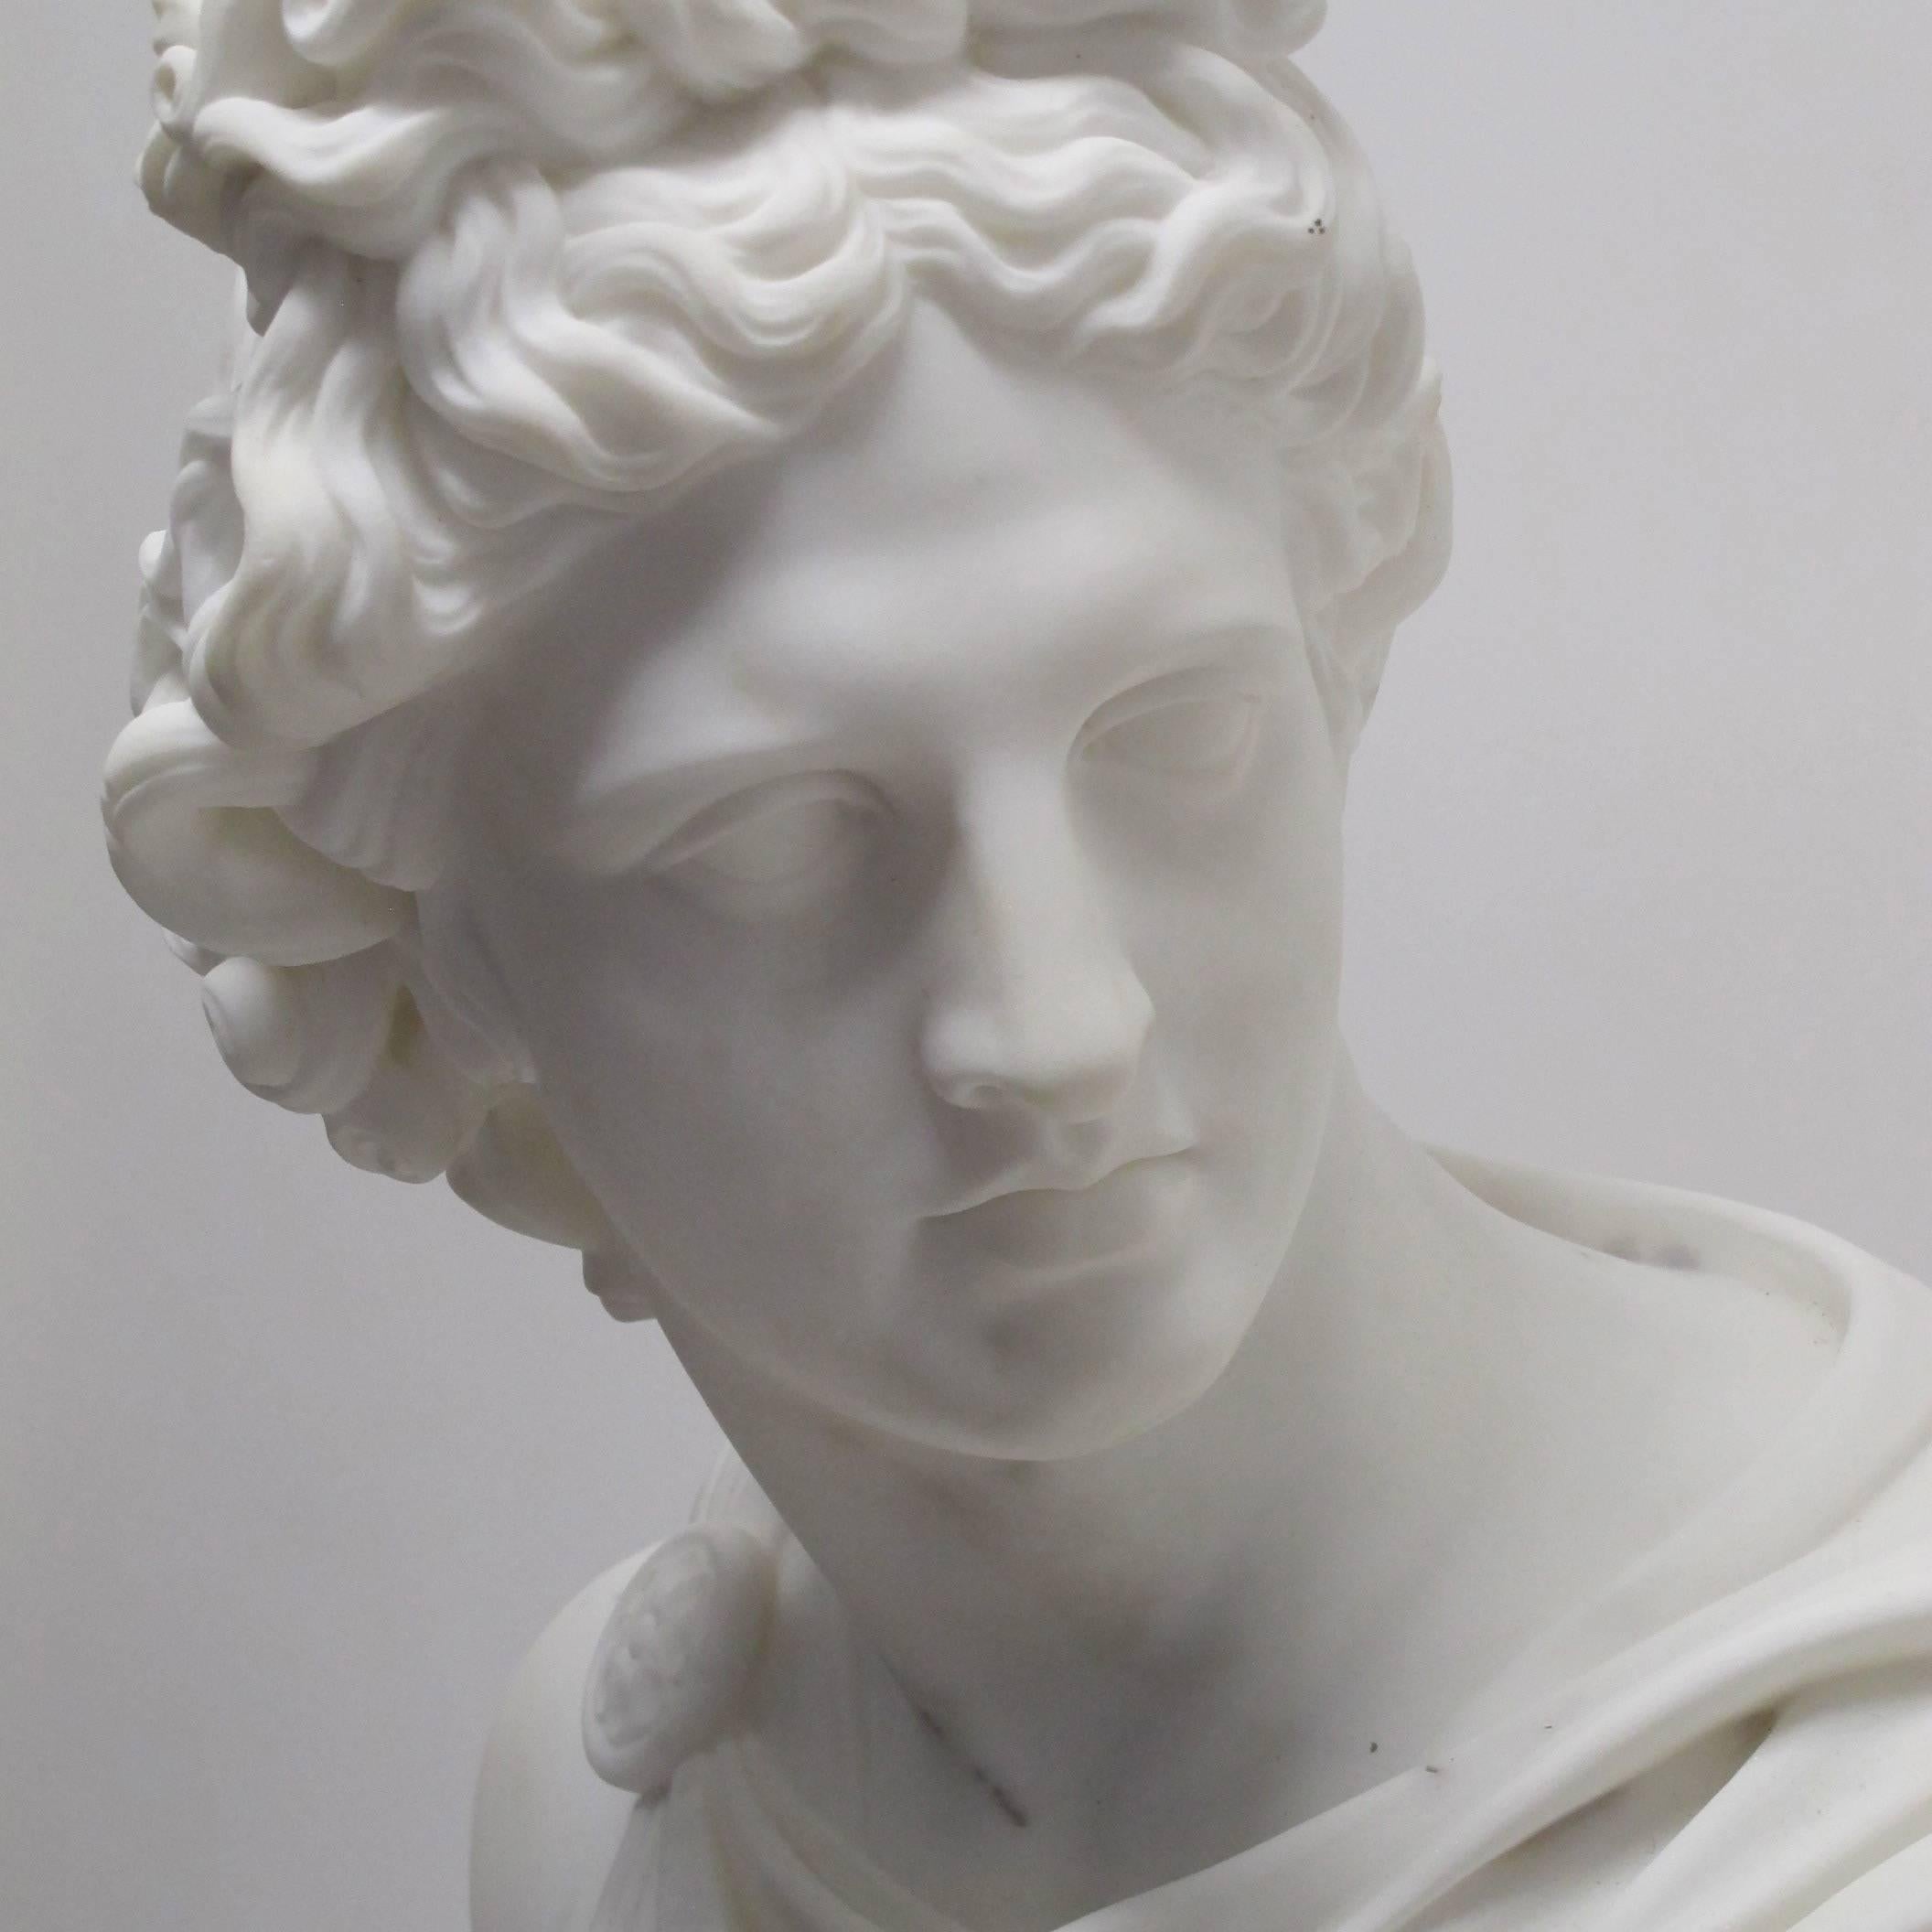 Un impressionnant buste d'Apollo en marbre de Carrare sculpté à la main, plus grand que nature, signé C.I.C. (1833-1876). Montrant les inclusions naturelles dans le marbre. Italie, 19e siècle.